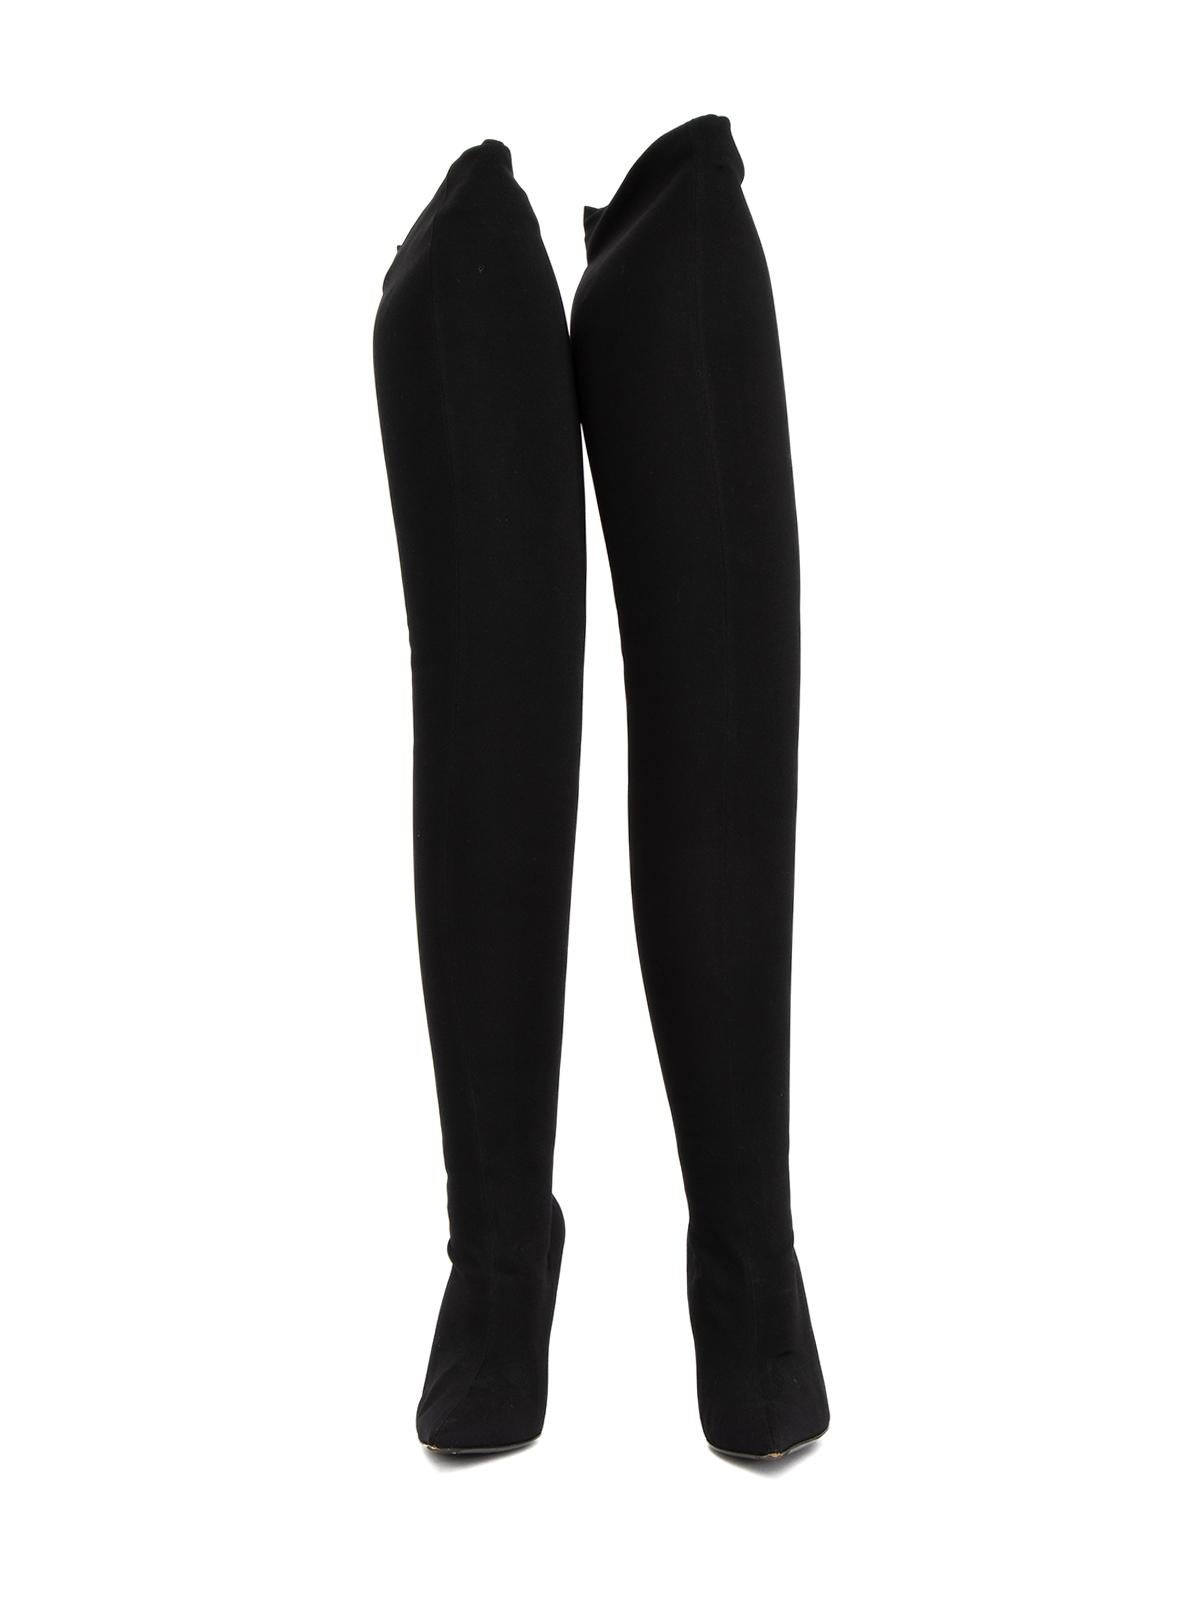 Black Balenciaga Women's Thigh High Pointed Boots